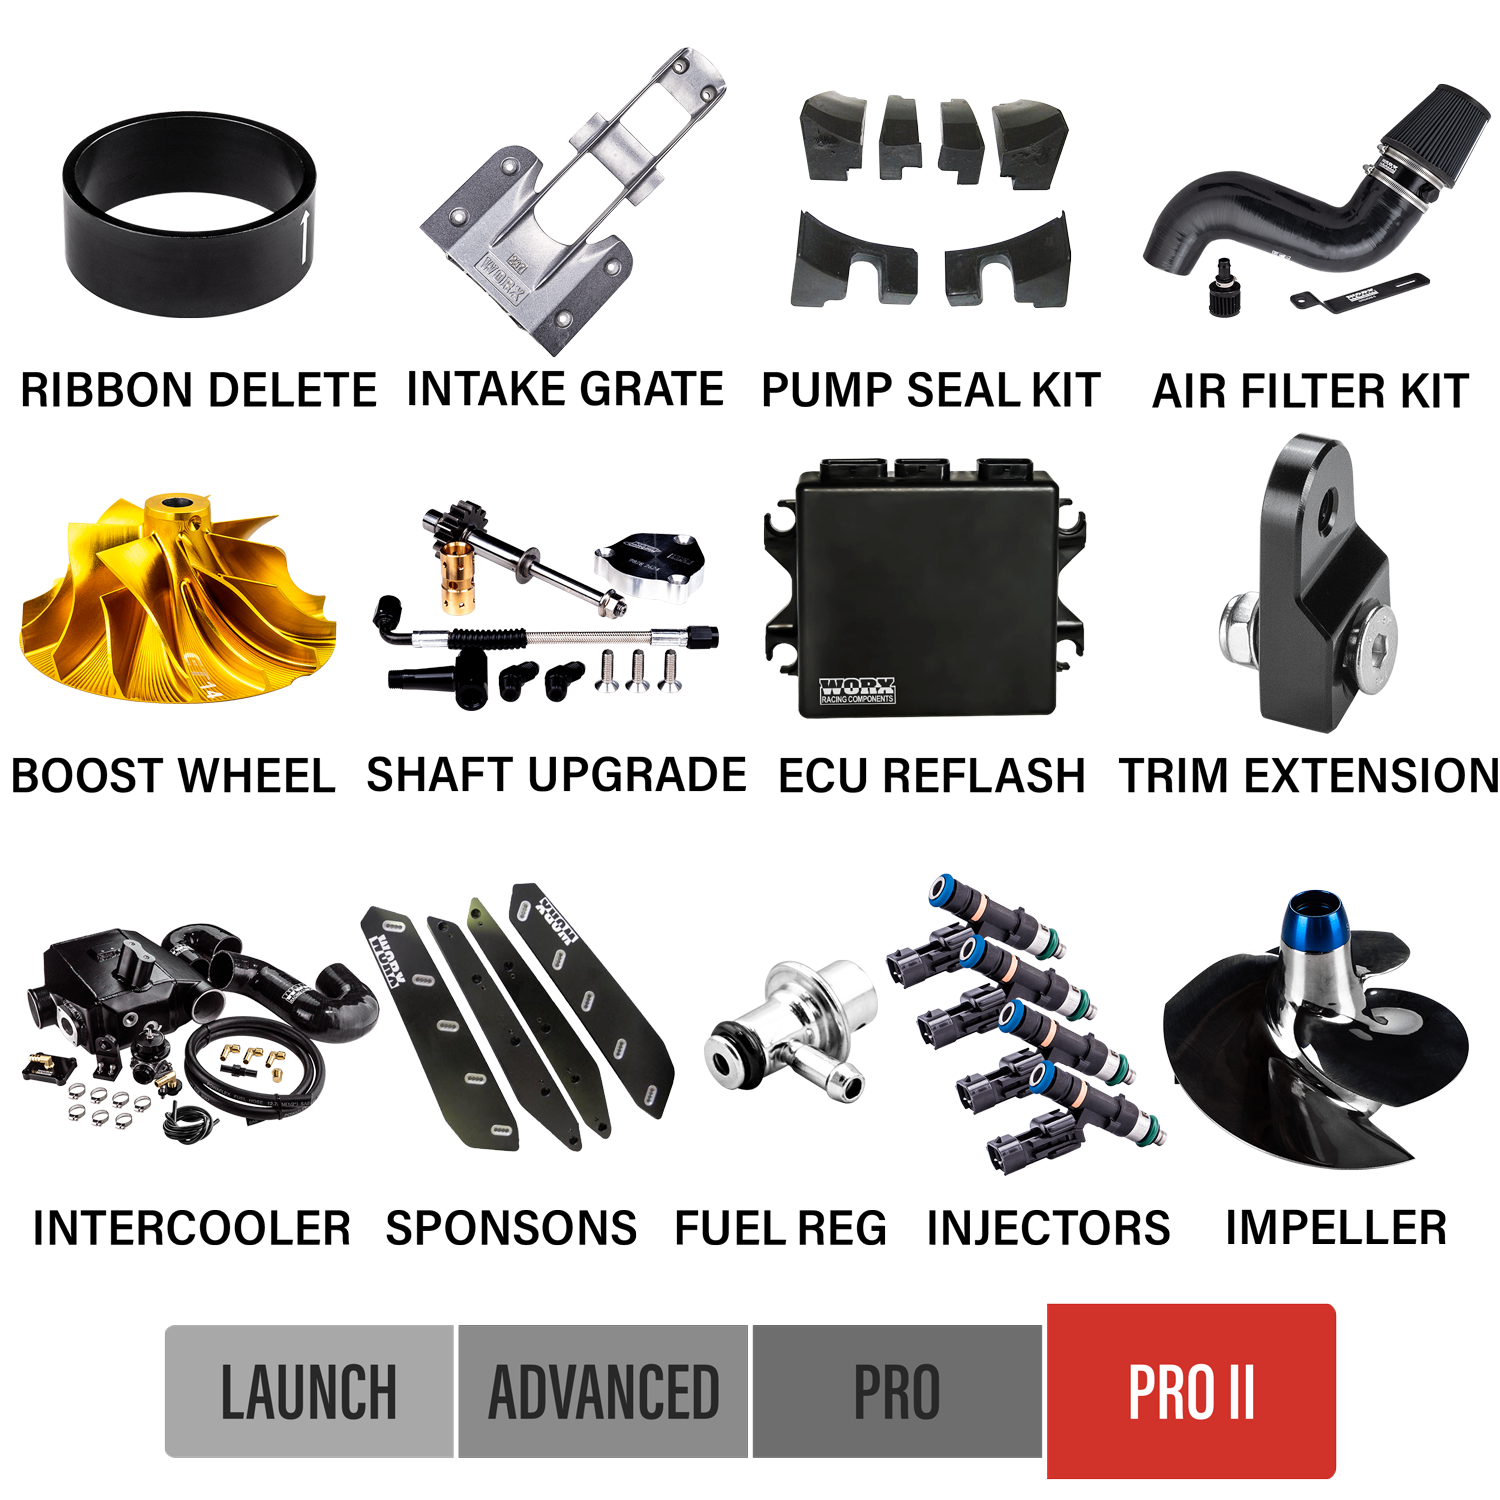 2017+ Yamaha GP1800 SVHO Upgrade Kits